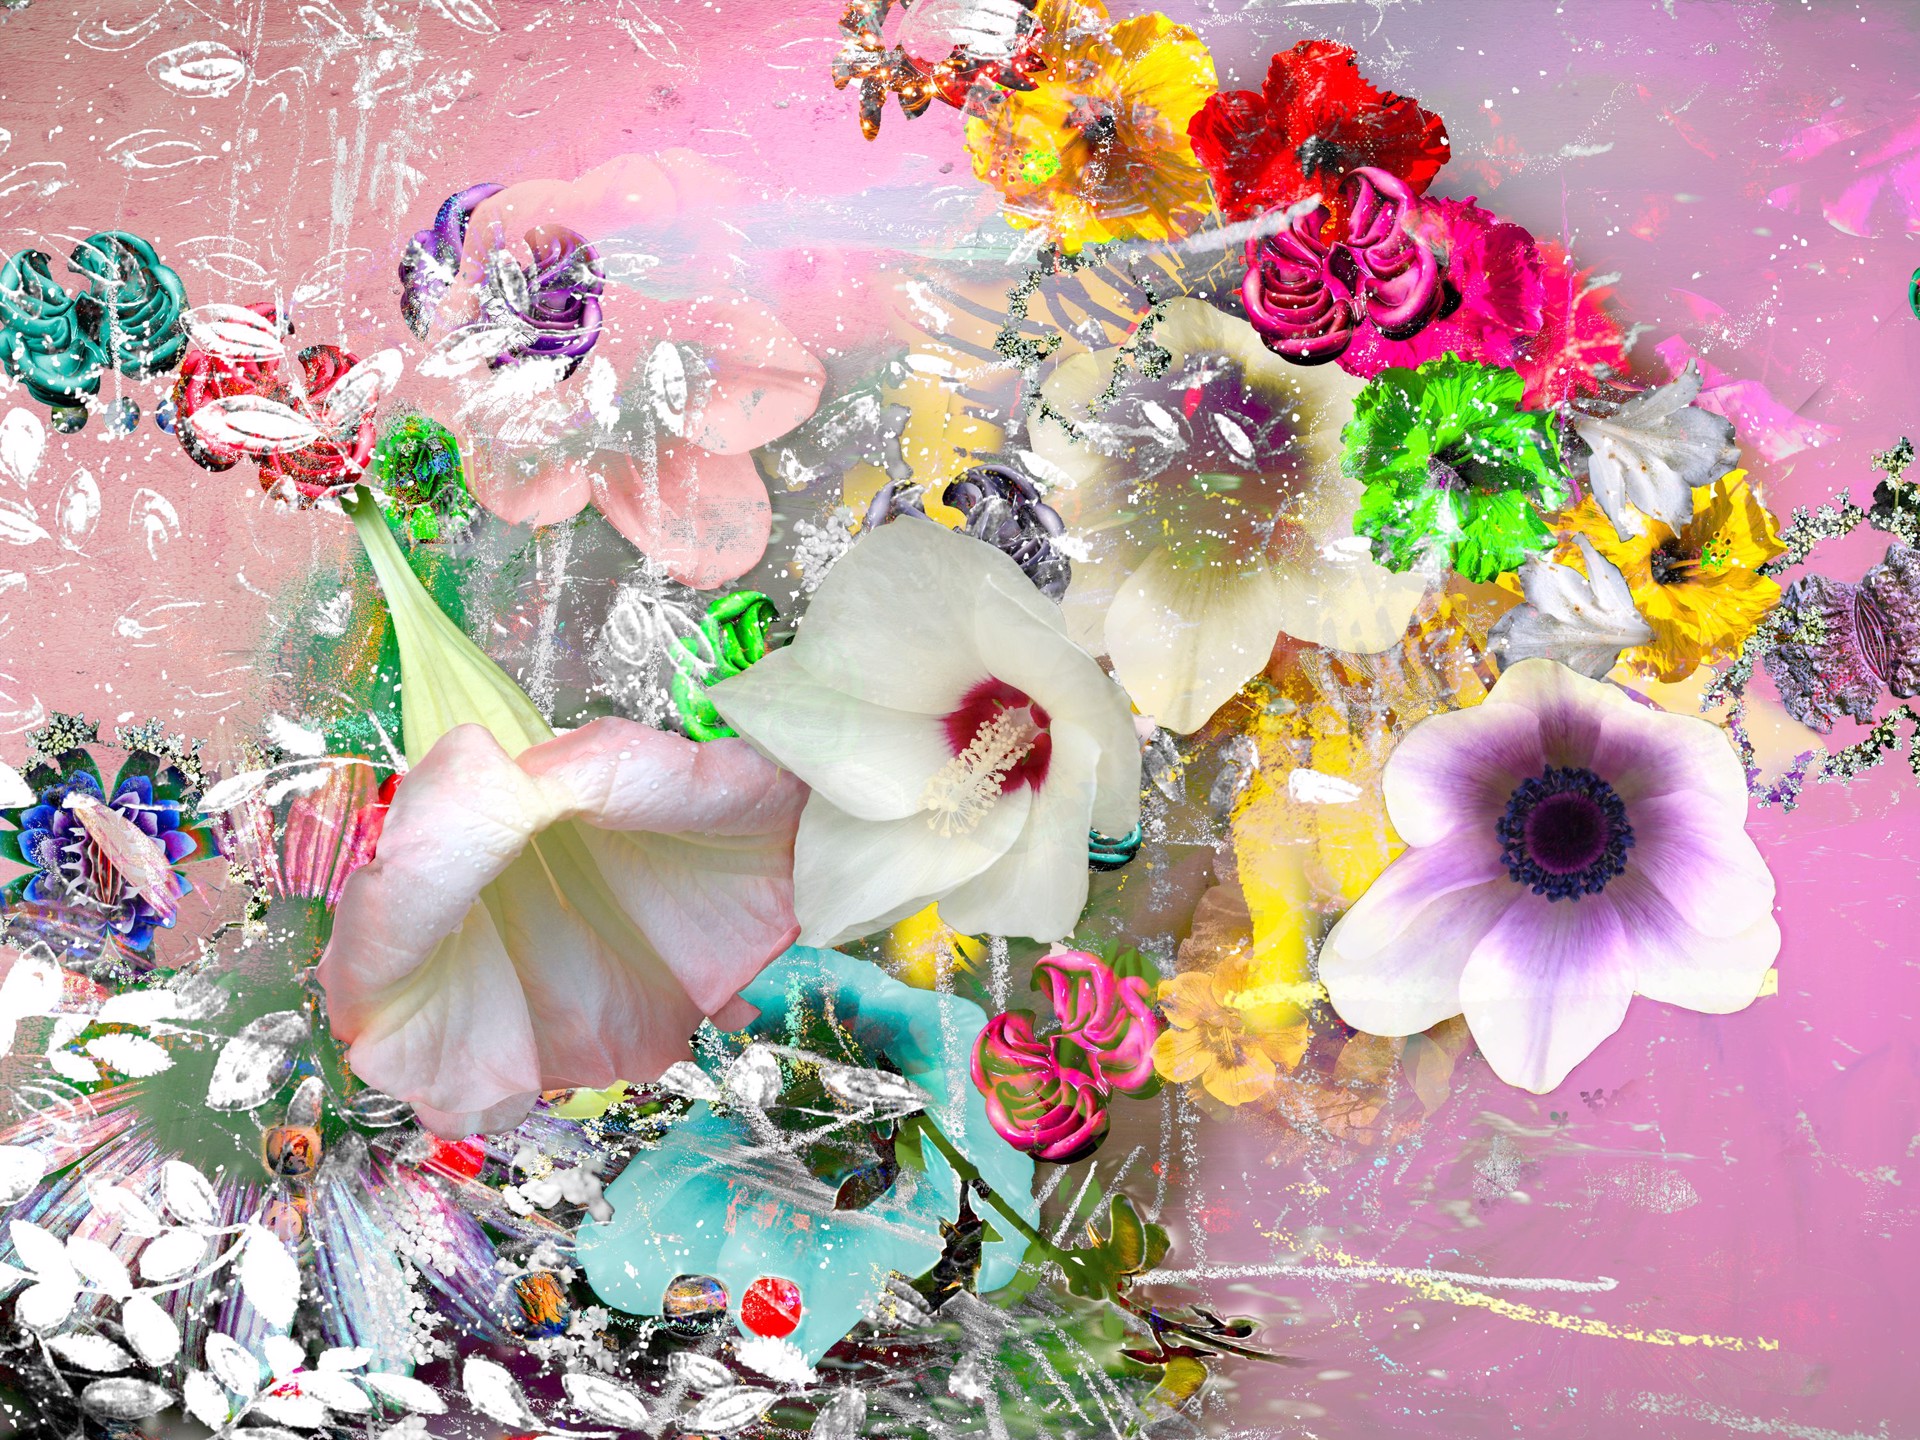 FLOWERS SERIES II NO. 10 by CAROL EISENBERG